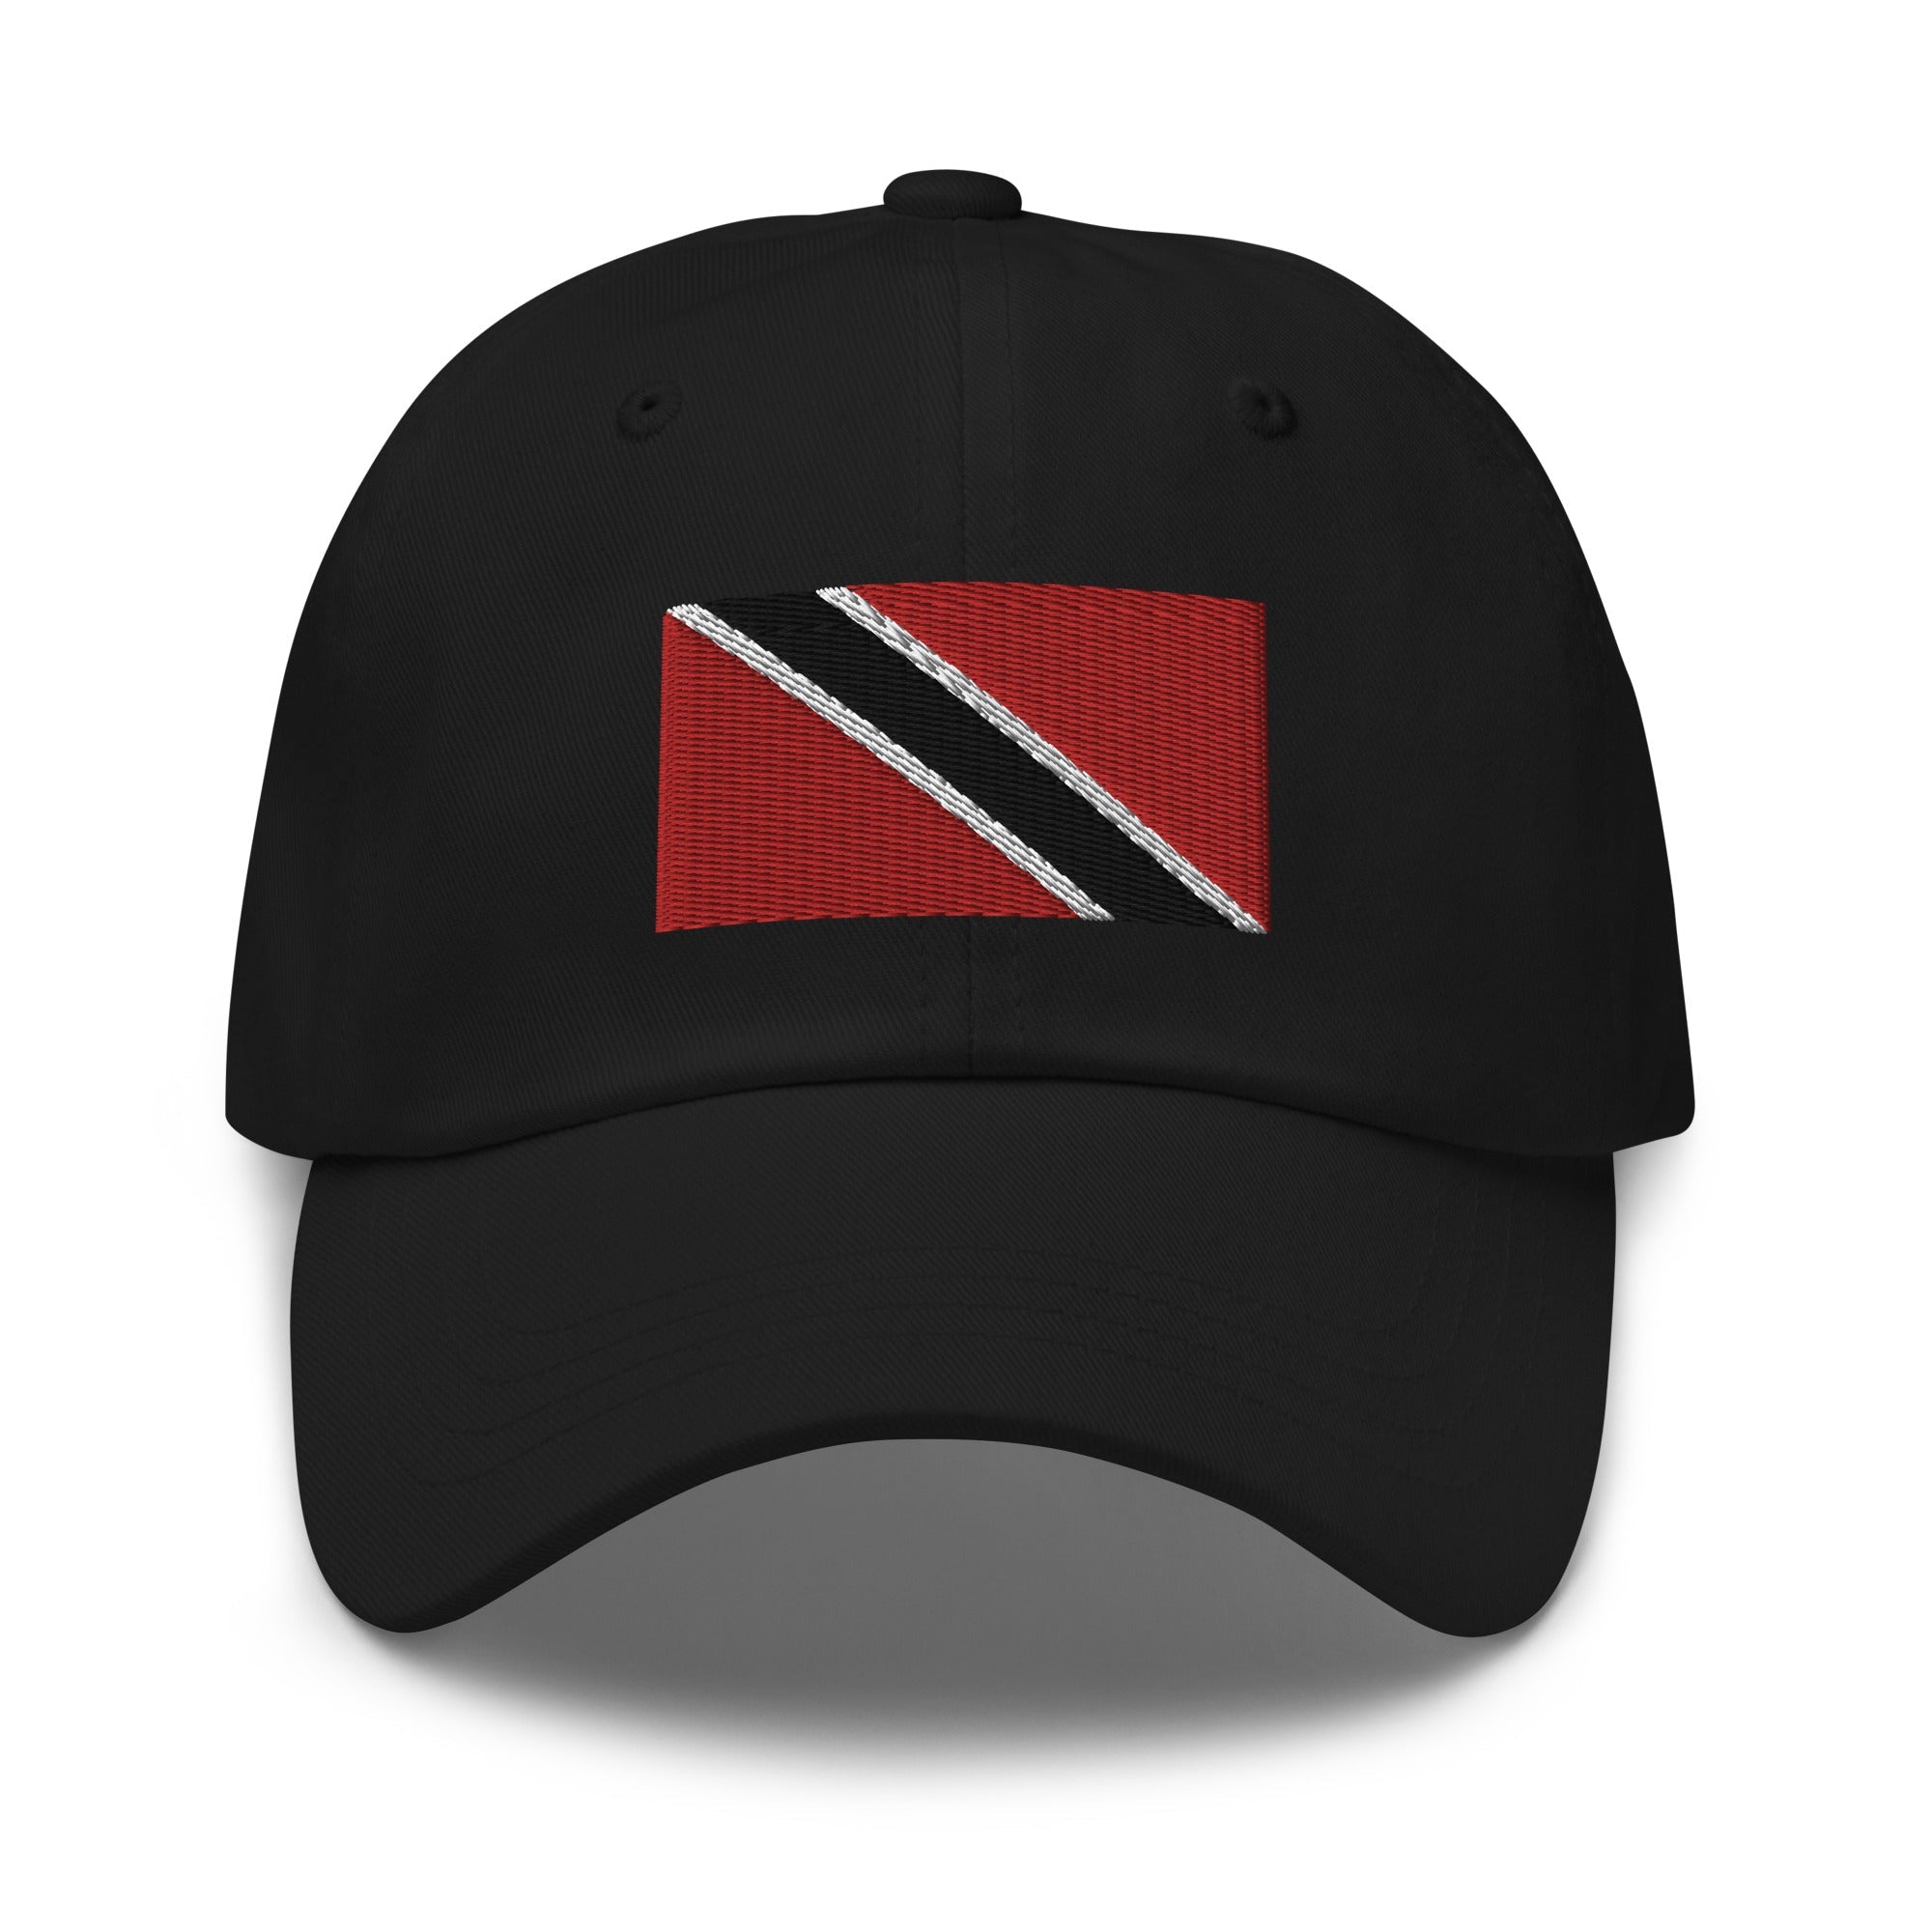 Trinidad & Tobago Flag Cap - Adjustable Embroidered Dad Hat